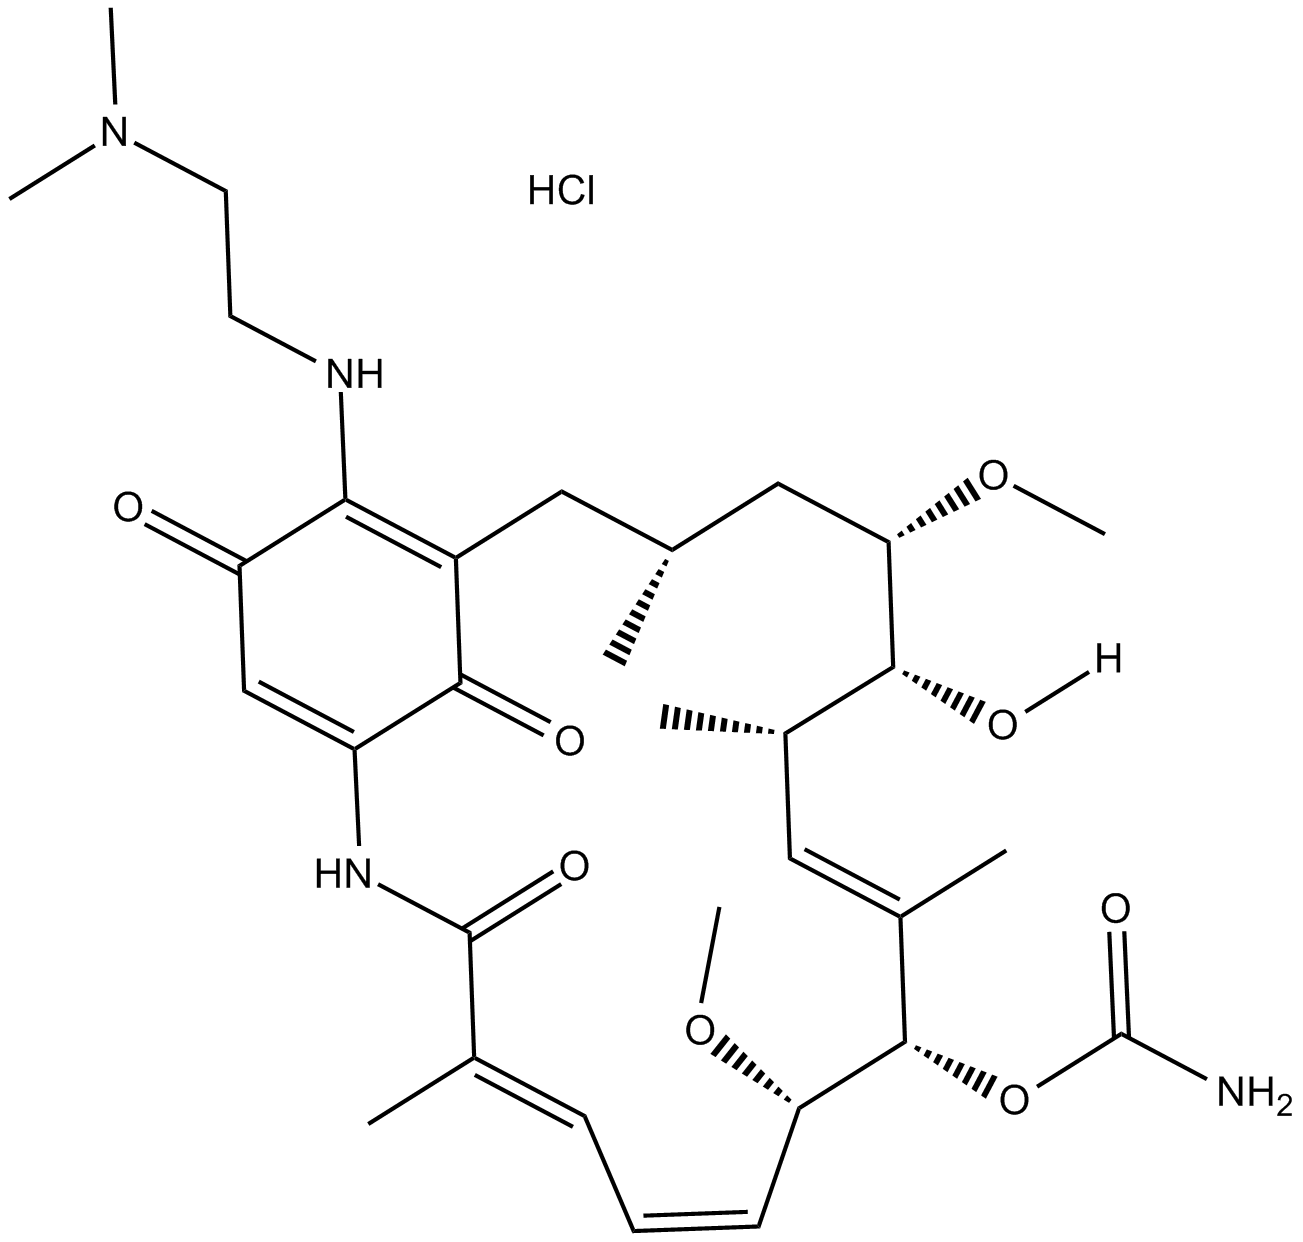 17-DMAG (Alvespimycin) HCl